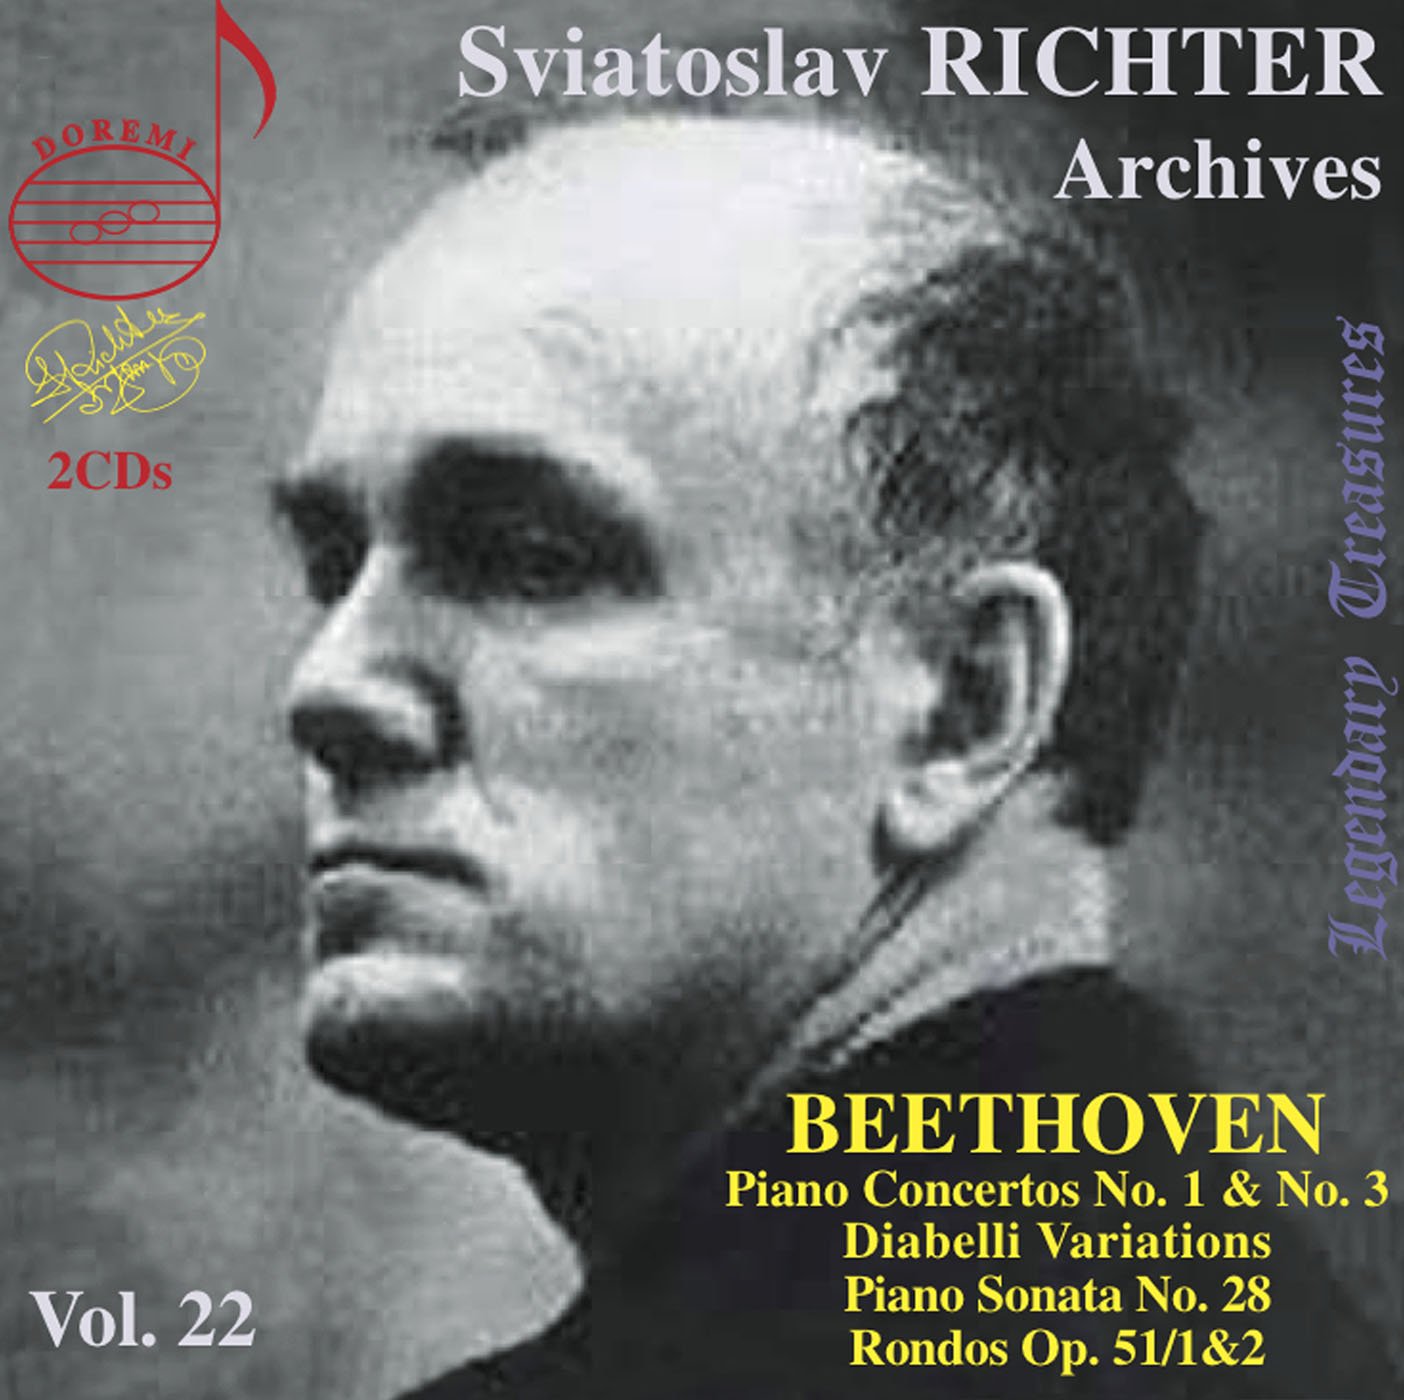 Audio Cd Sviatoslav Richter: Archives Vol. 22 - Beethoven (2 Cd) NUOVO SIGILLATO, EDIZIONE DEL 23/01/2013 SUBITO DISPONIBILE